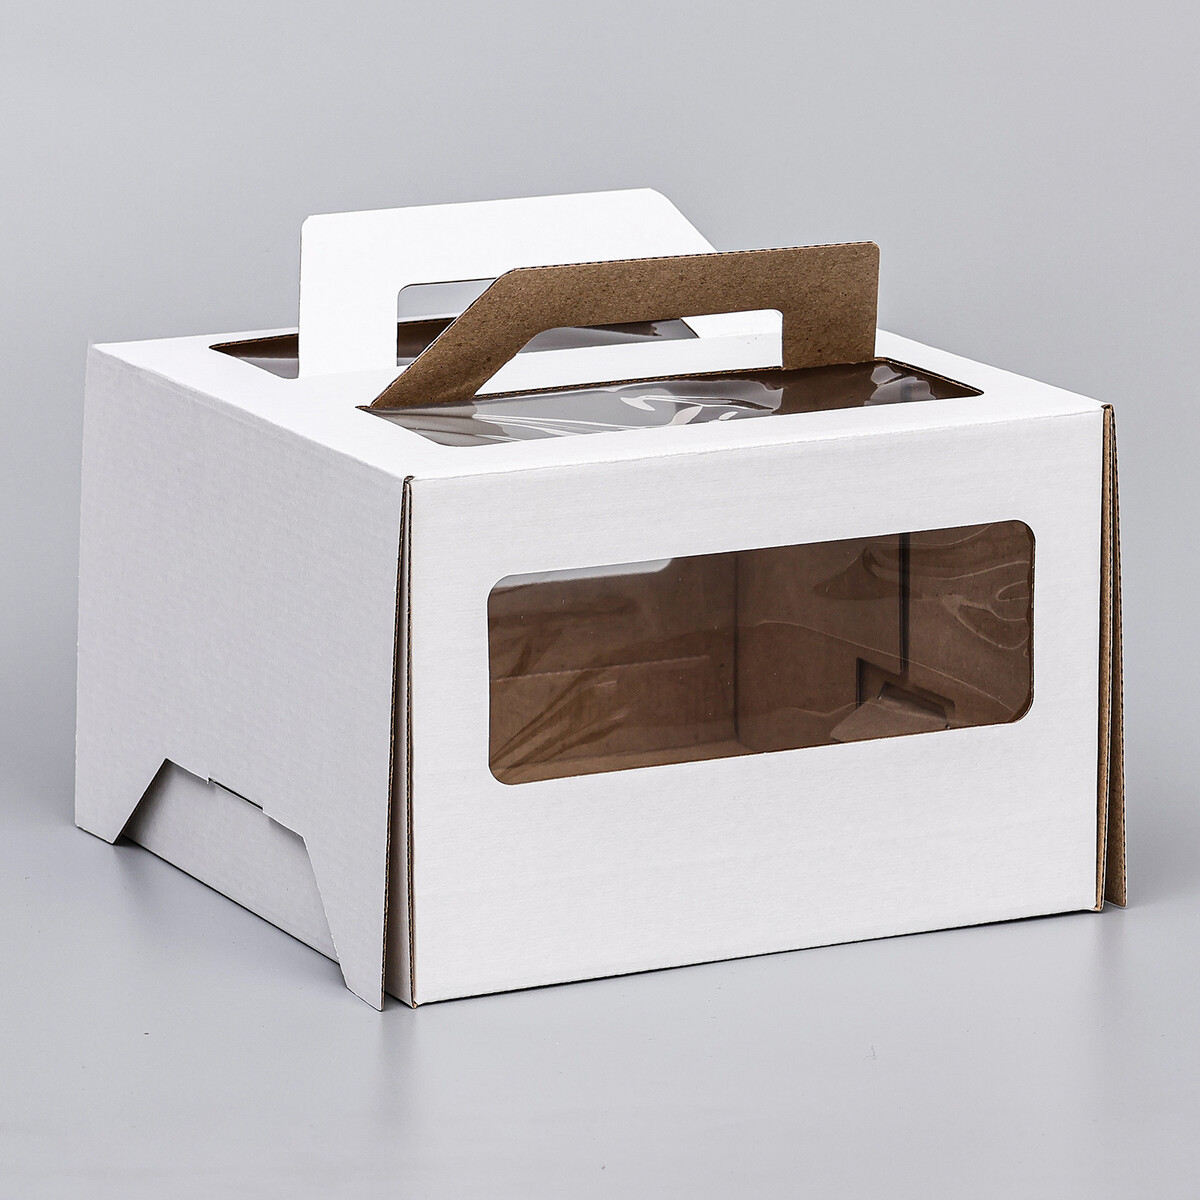 Коробка под торт 2 окна, с ручками, белая, 22 х 22 х 15 см коробка под торт белая 18 х 18 х 10 см